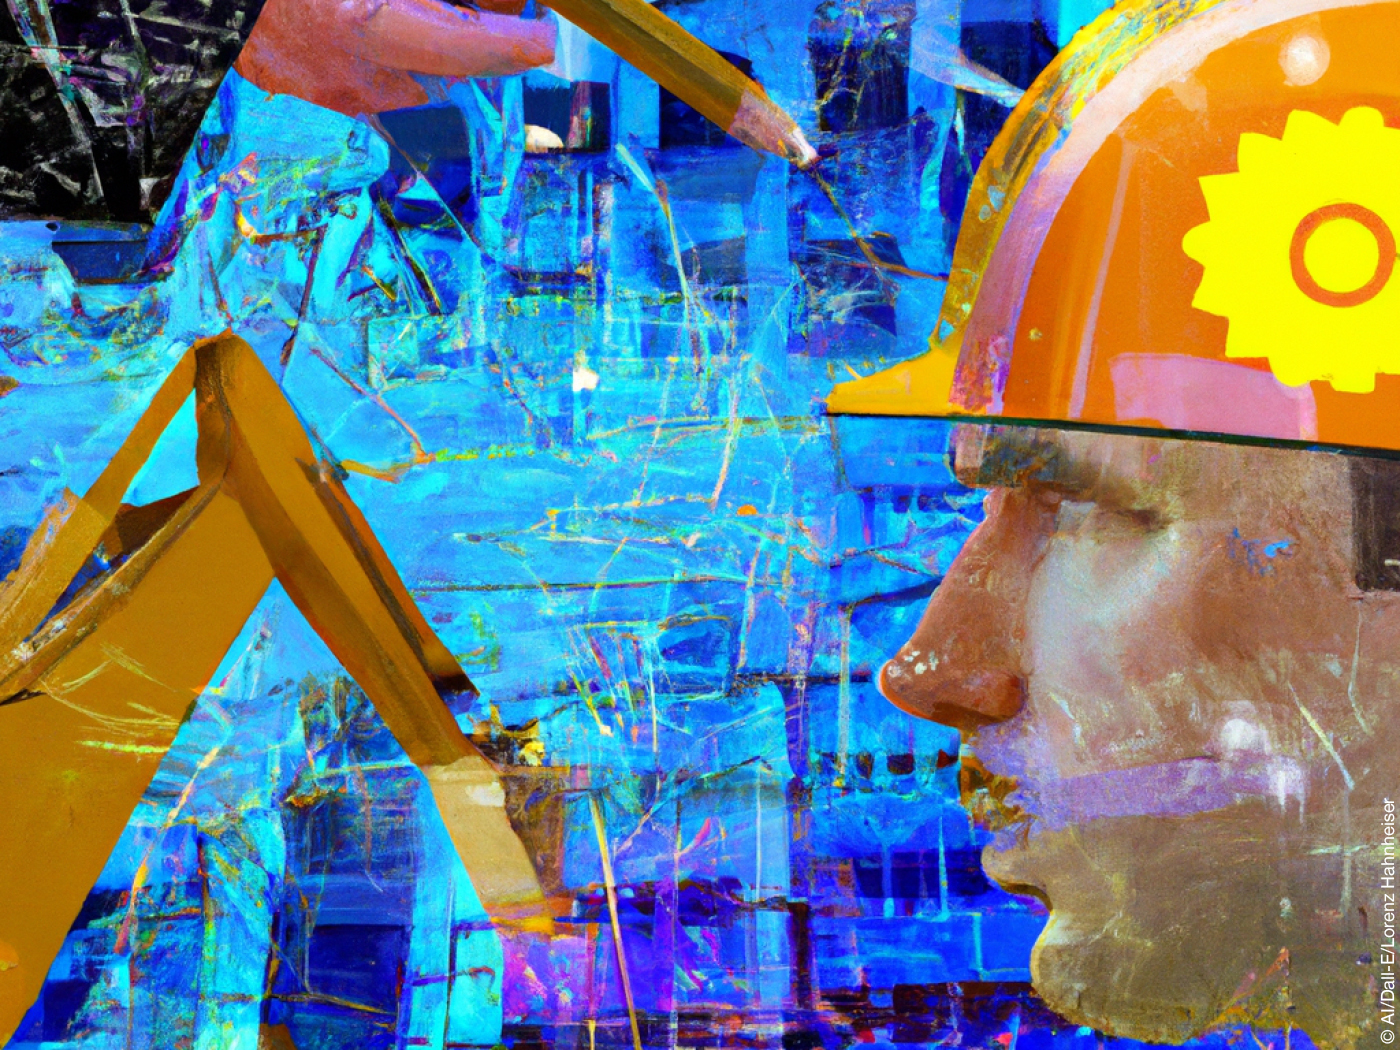 Eine Hand mit Stift, der Arm eines Baggers und ein männlicher Kopf mit Bauarbeiter-Helm, im Hintergund die Anmutung einer Hausfassade. Das Bild hat eine Künstliche Intelligenz erstellt. 